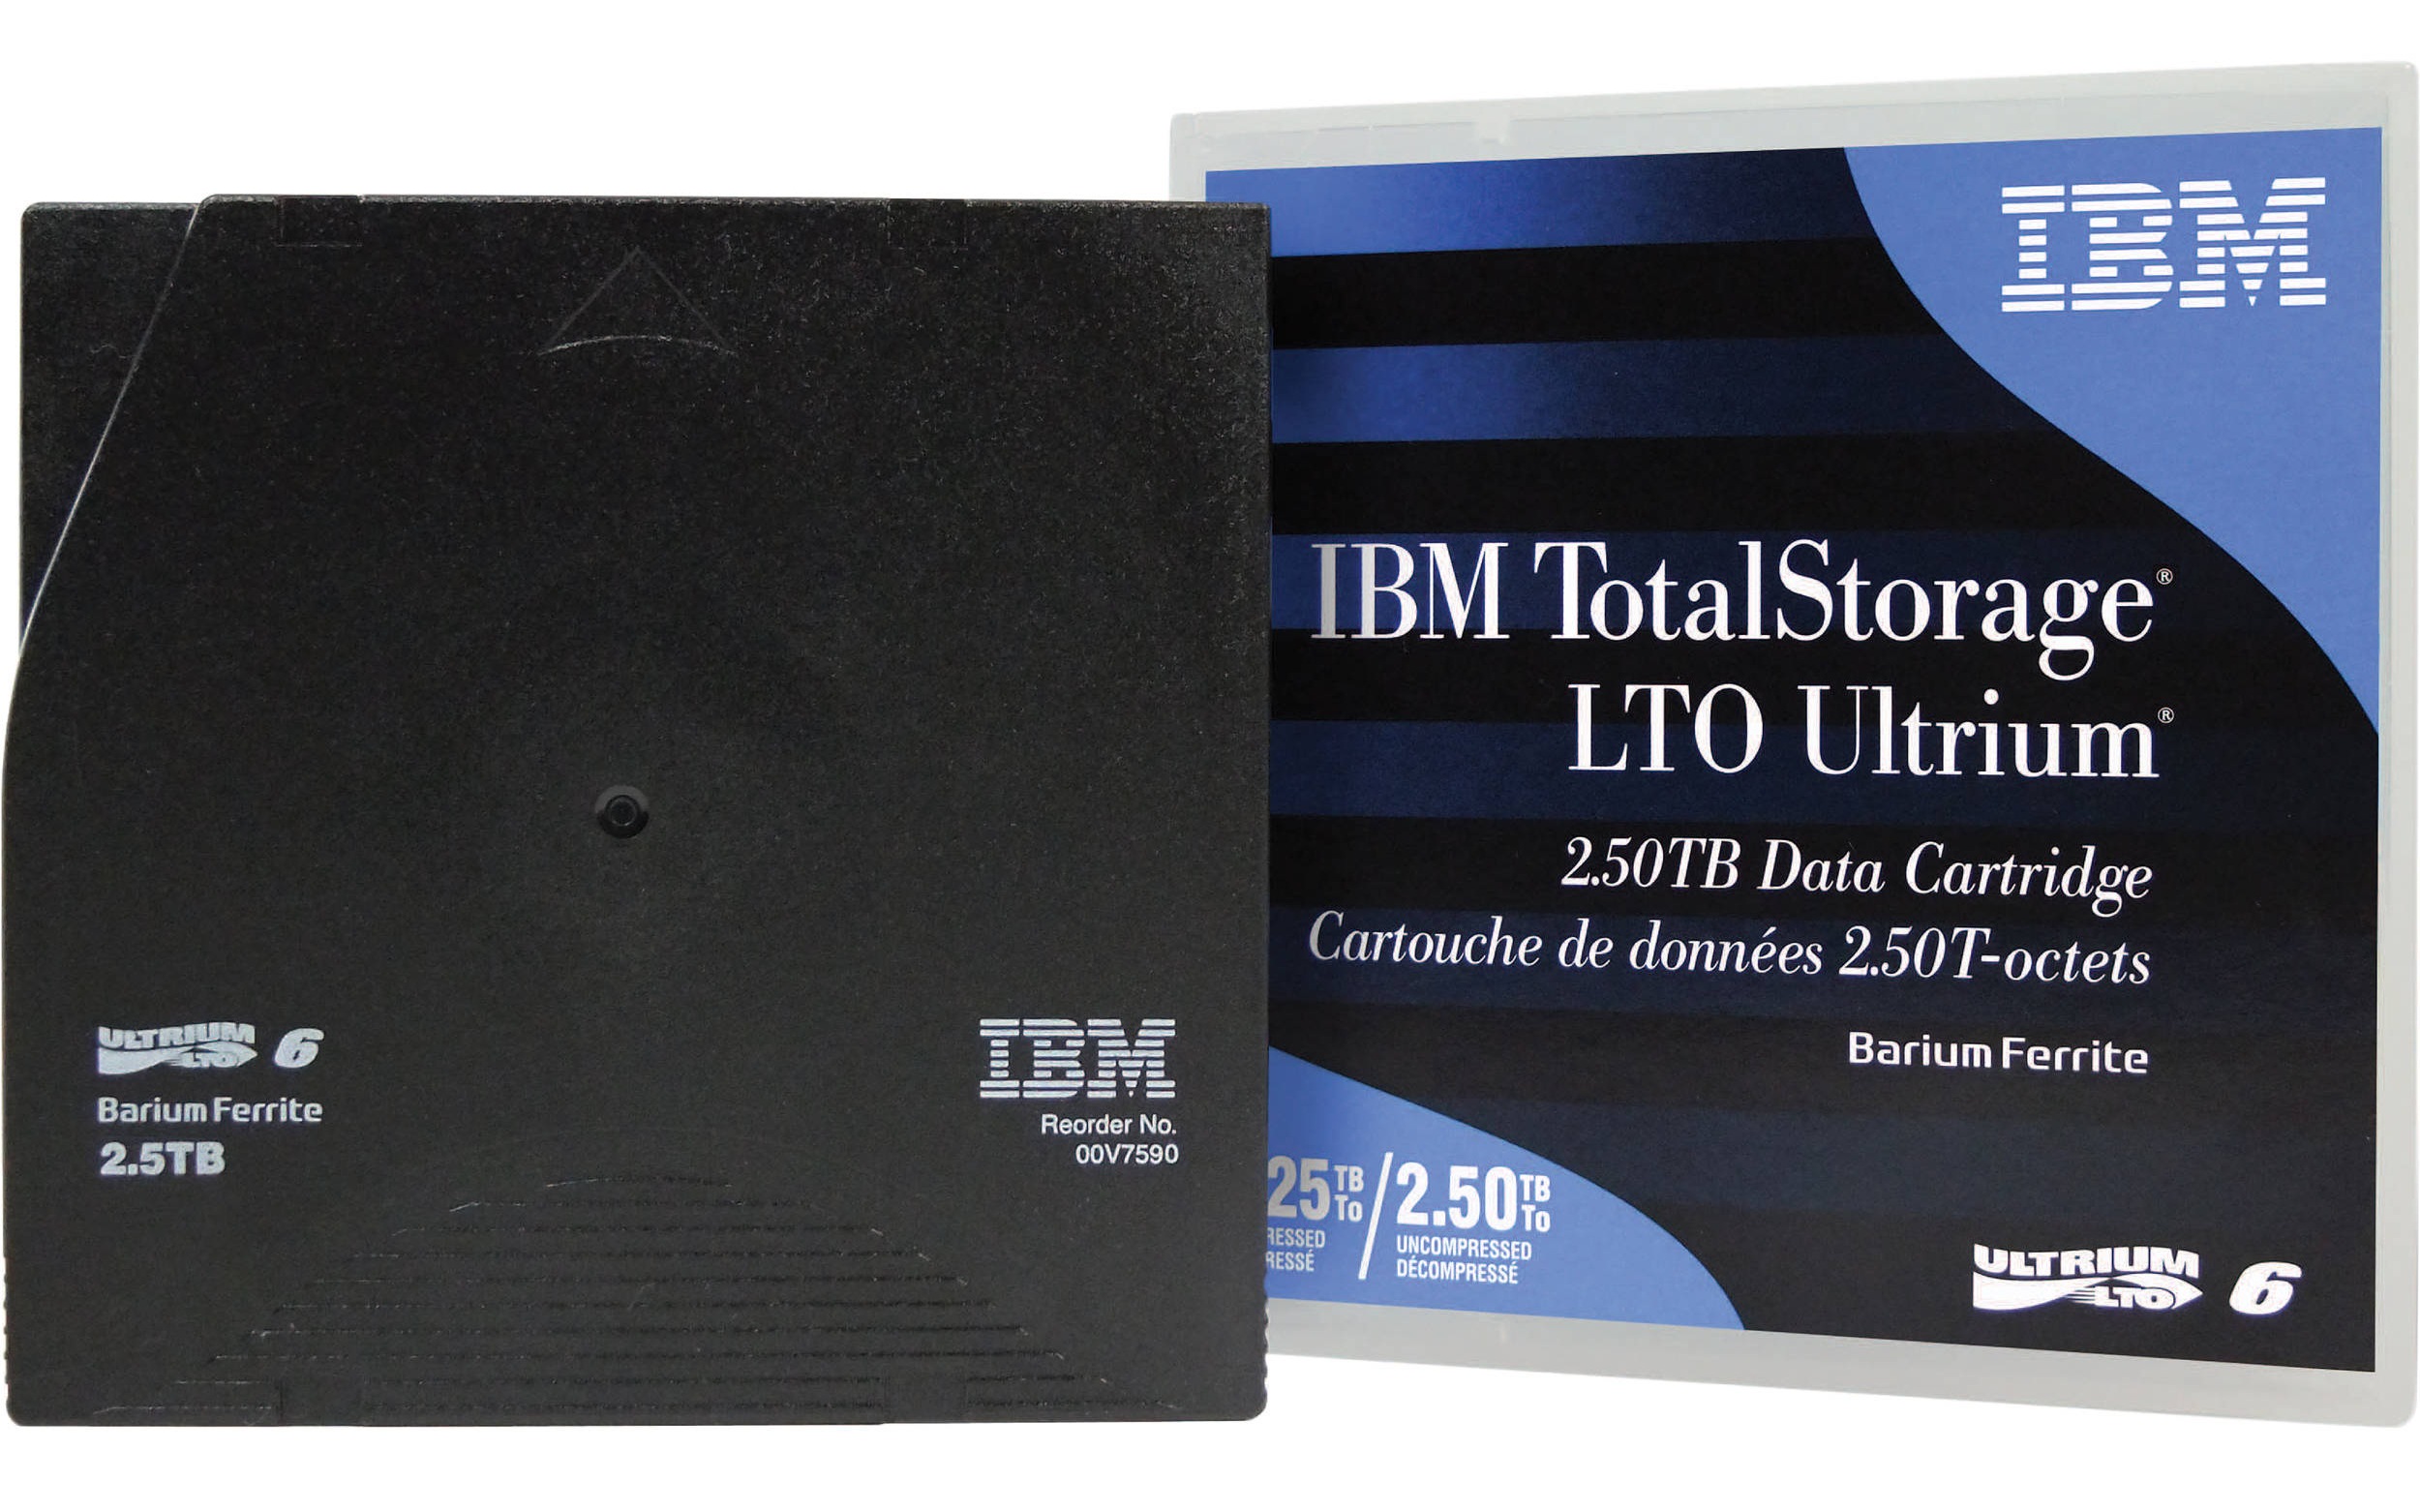 Компания IBM представила неинициализированные картриджи LTO Ultrium M8